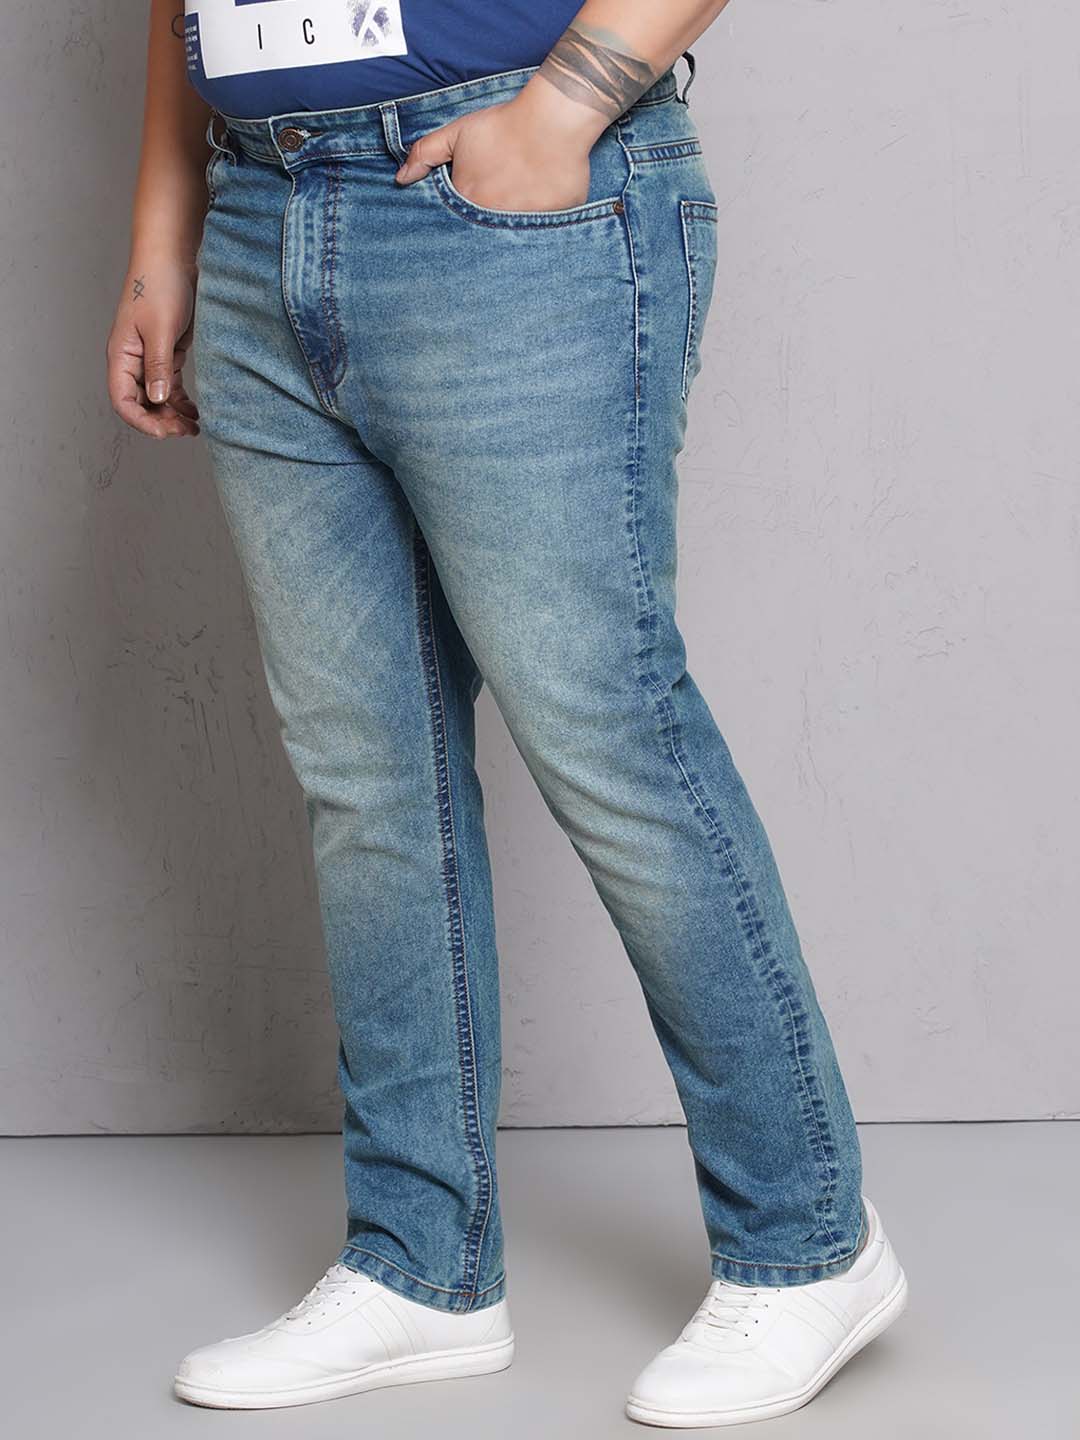 bottomwear/jeans/EJPJ25148/ejpj25148-4.jpg